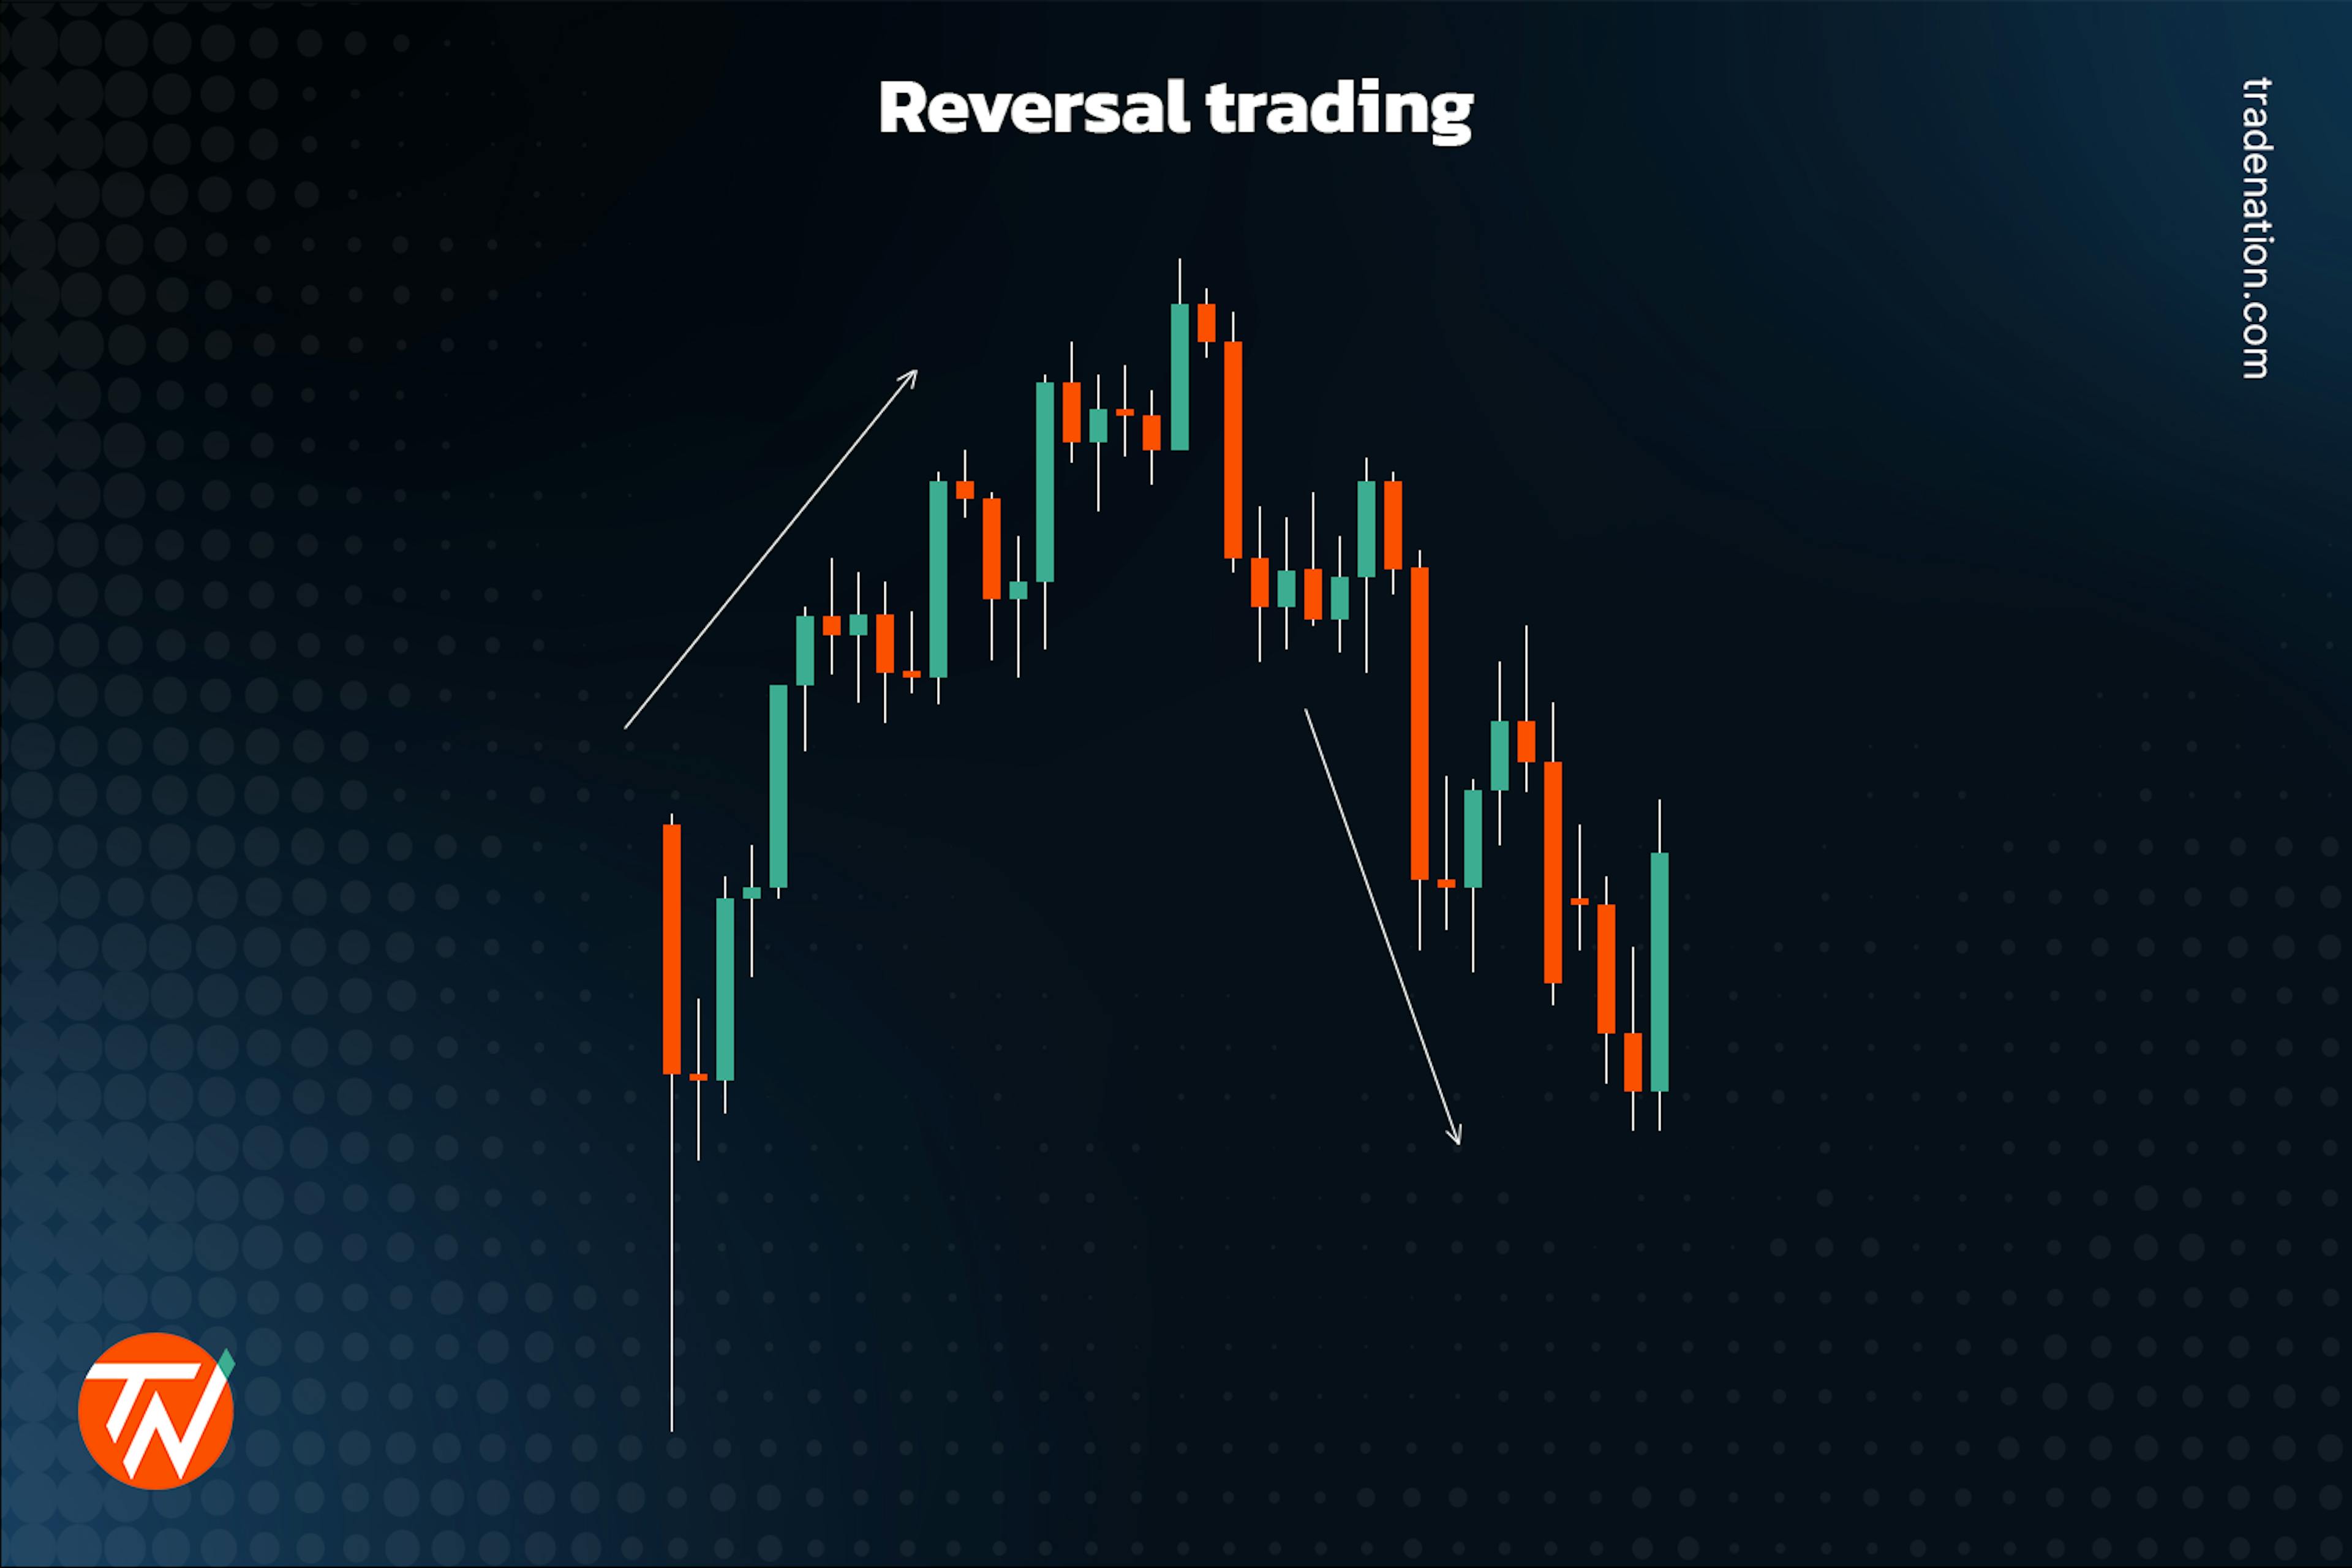 Reversal trading explained